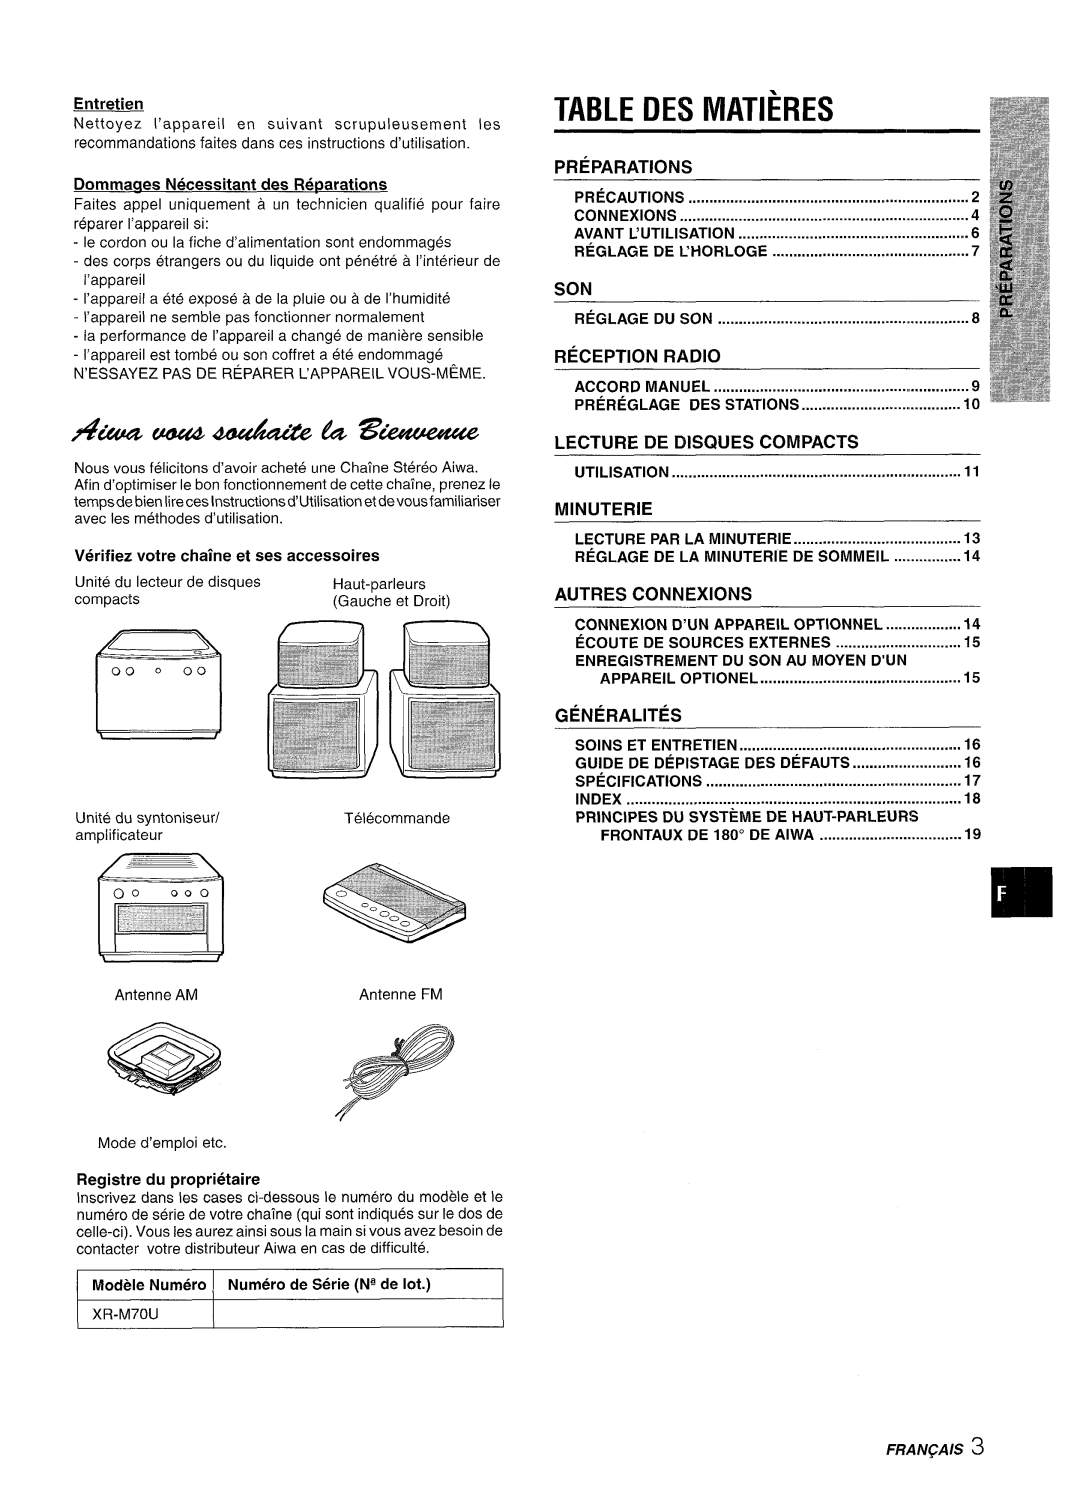 Aiwa XR-M70 manual 4?uu#u44uui&&?4A%wwue, Des Matieres, Preparations, Reception Radio, Lecture, De Disques Compacts, Autres 